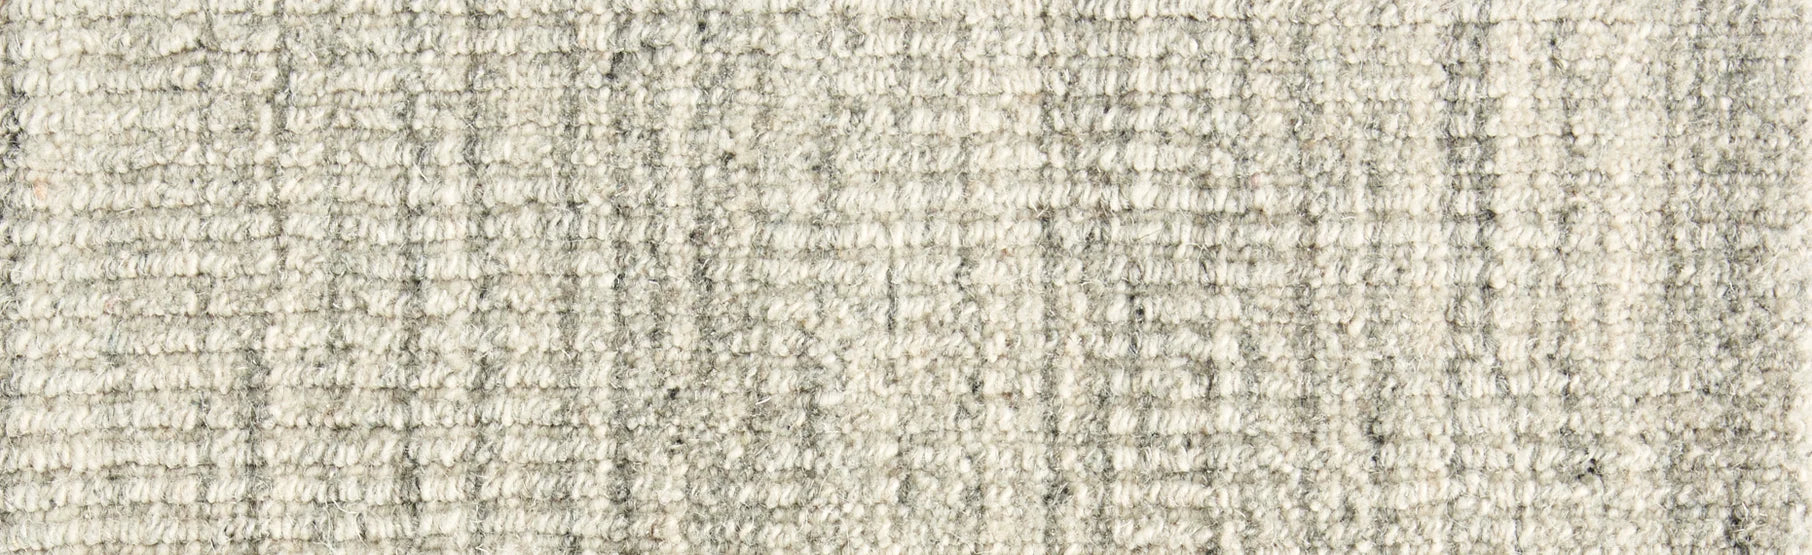 Hibernia - Magnum Opus - Carpet